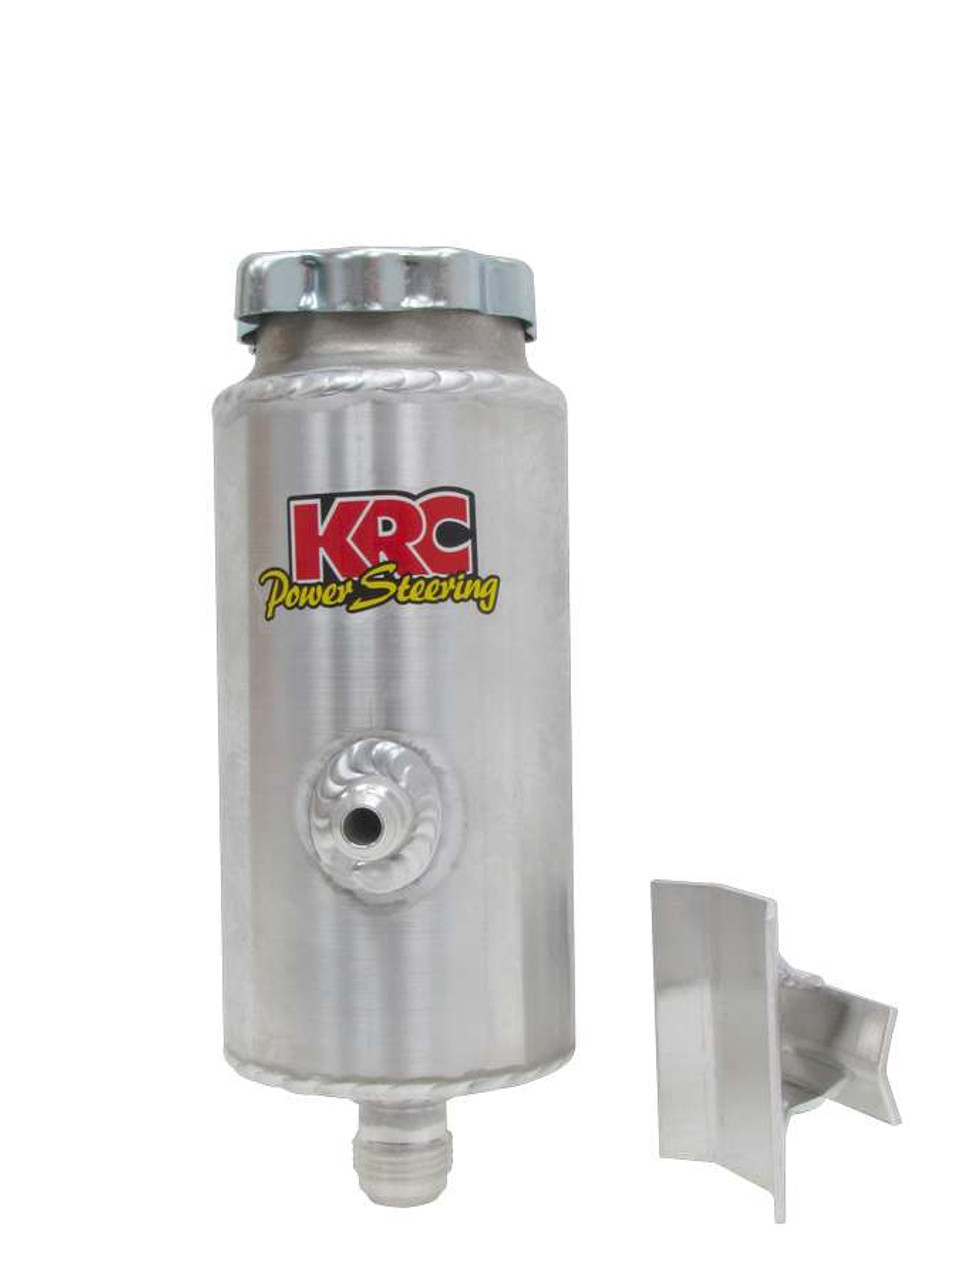 KRC Reservoir Power Steering Round - KRC91500000